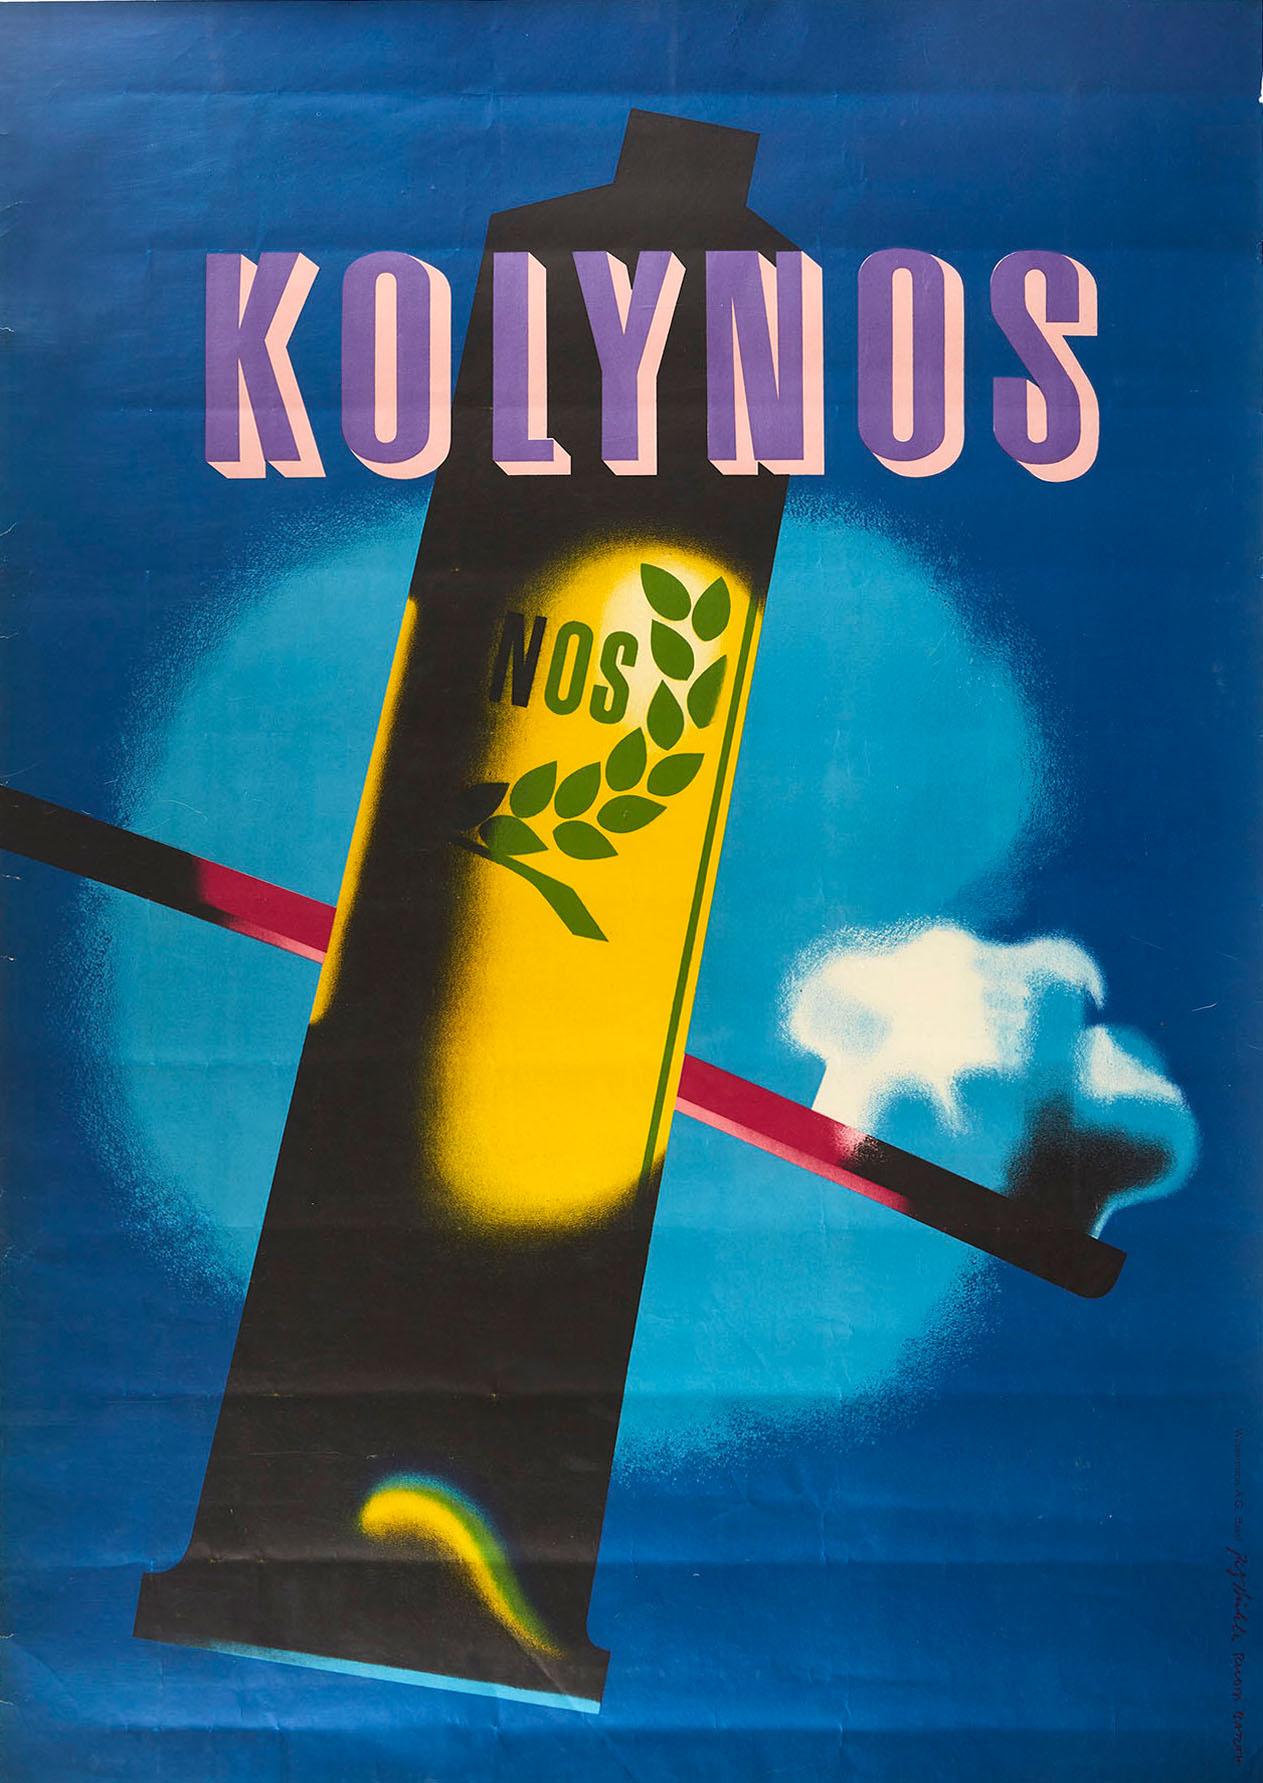 Fritz Buhler / Barth Ruodi Print - Original Vintage Poster Kolynos Toothpaste Dental Health Care Modernist Design